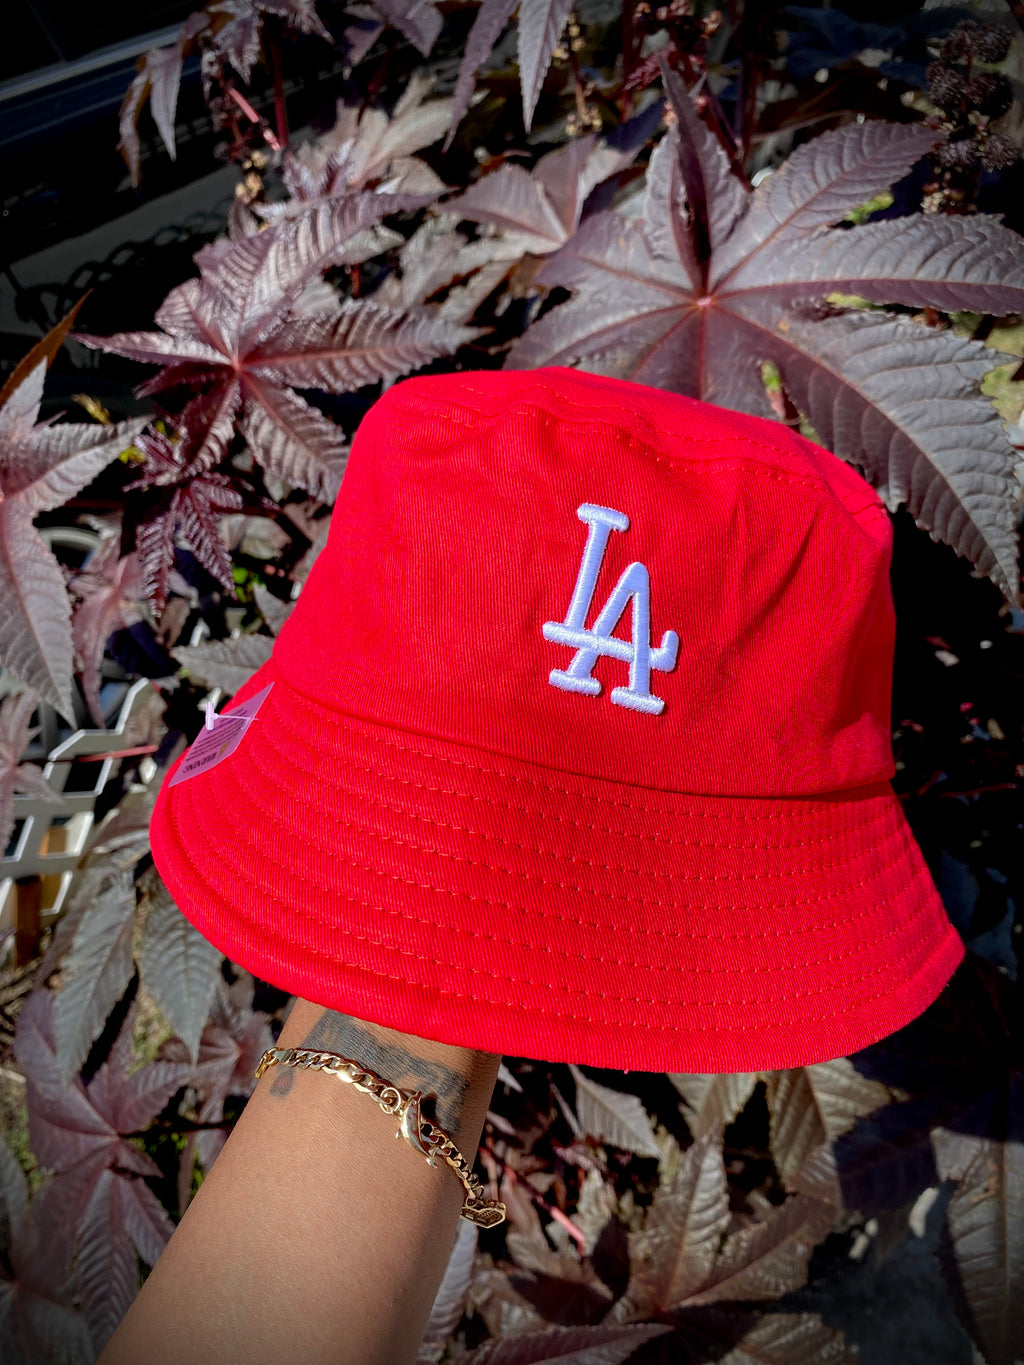 LA Bucket Hats